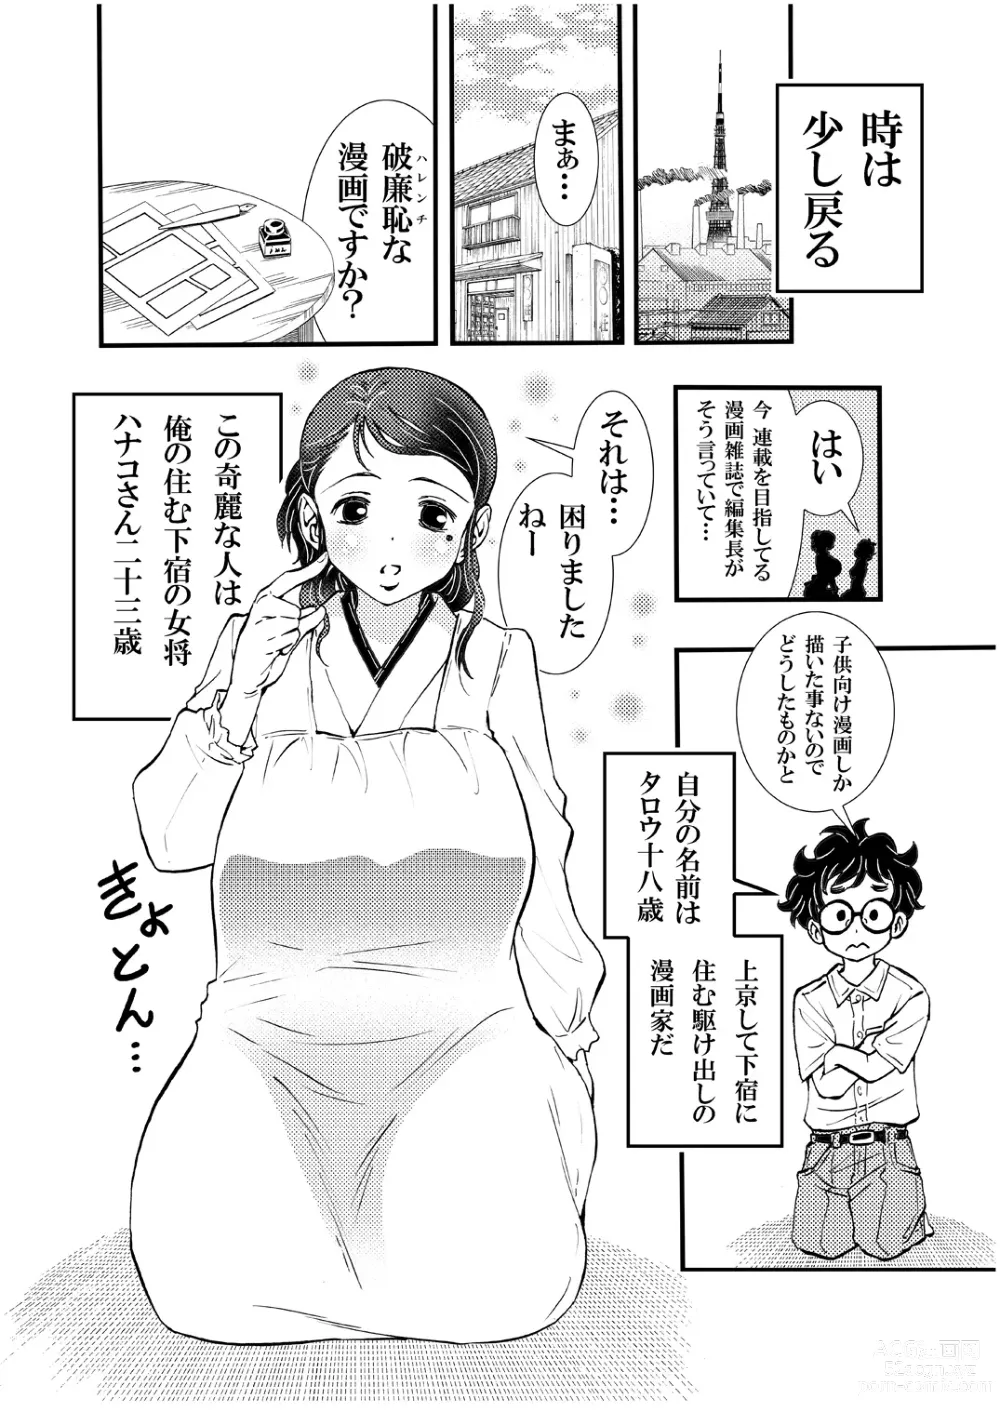 Page 6 of doujinshi Ero Okami Showa no Joji